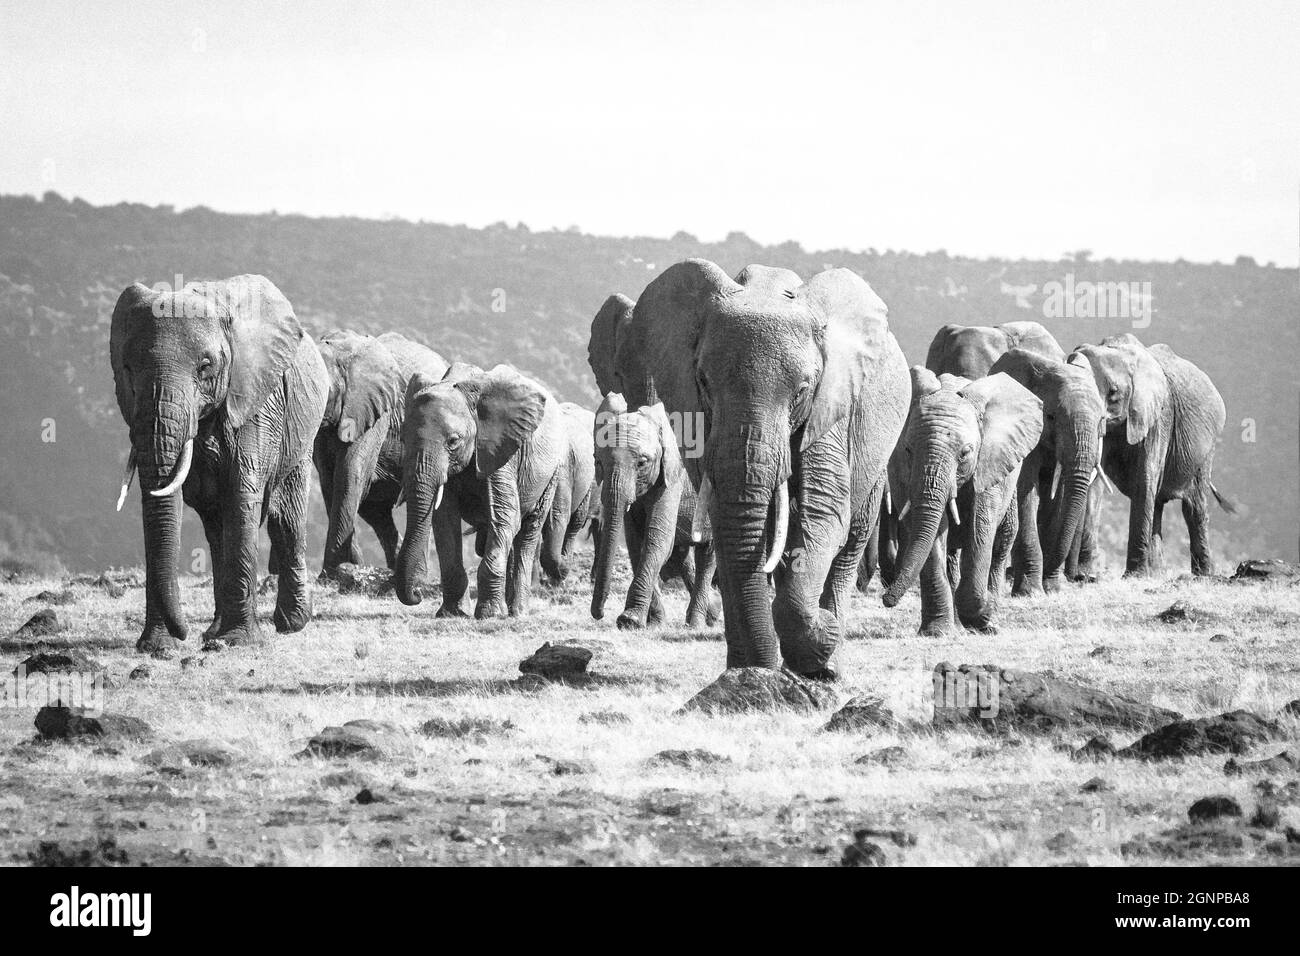 Una manada de elefantes baila en el horizonte, con pasos firmes acercándonos. La mirada de estos paquidermos te deja aturdido, un instante que pasa en s. Foto de stock